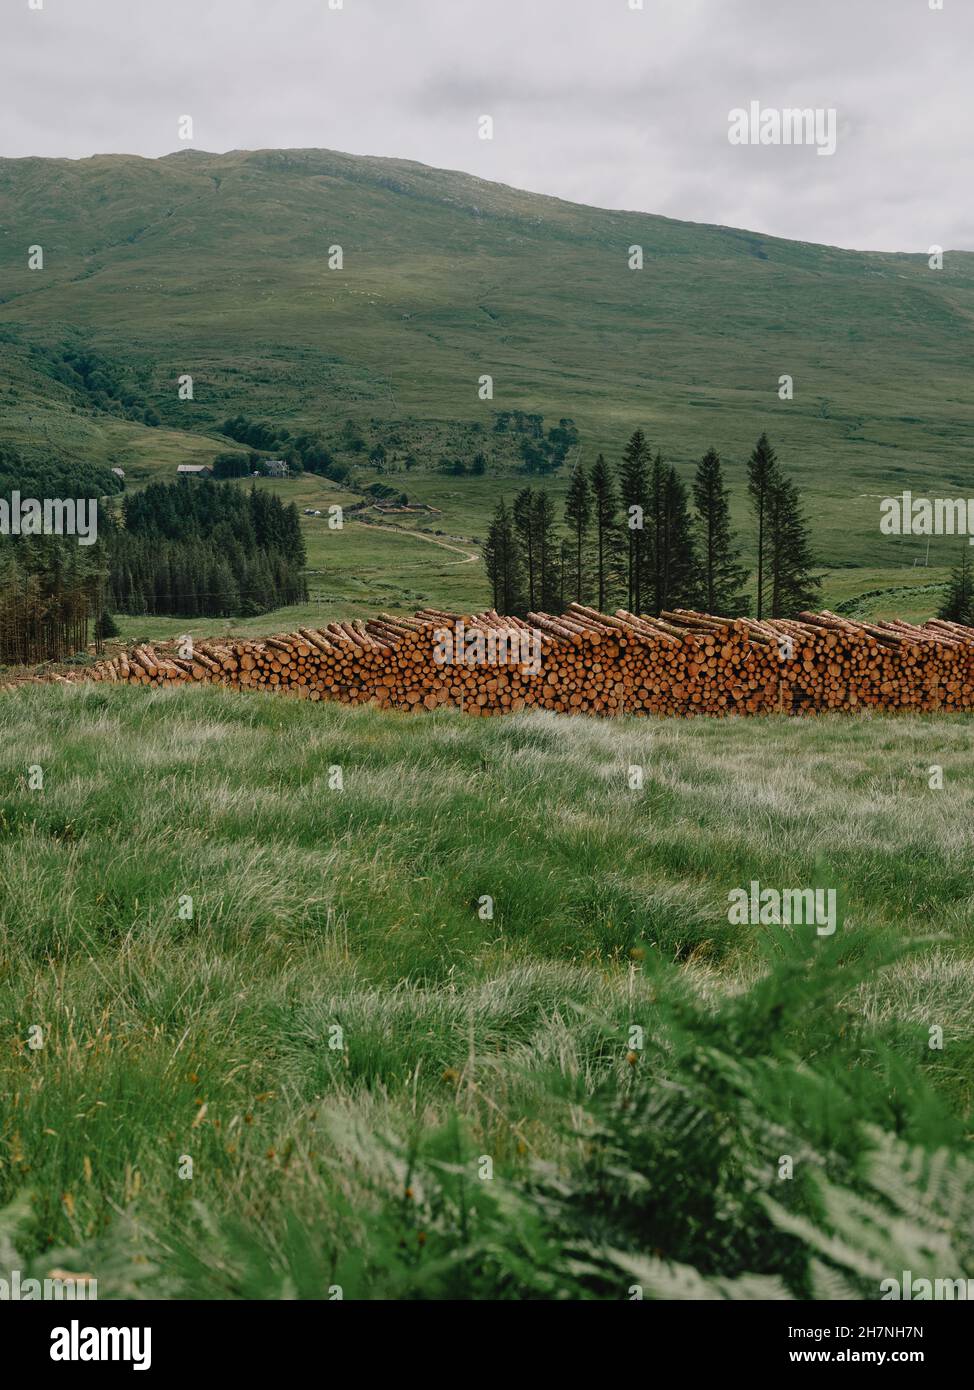 Gestapelte Holzstämme bereit für den Transport weg in der grünen West Highlands Landschaft von Schottland - Holzfäller Forstwirtschaft Stockfoto